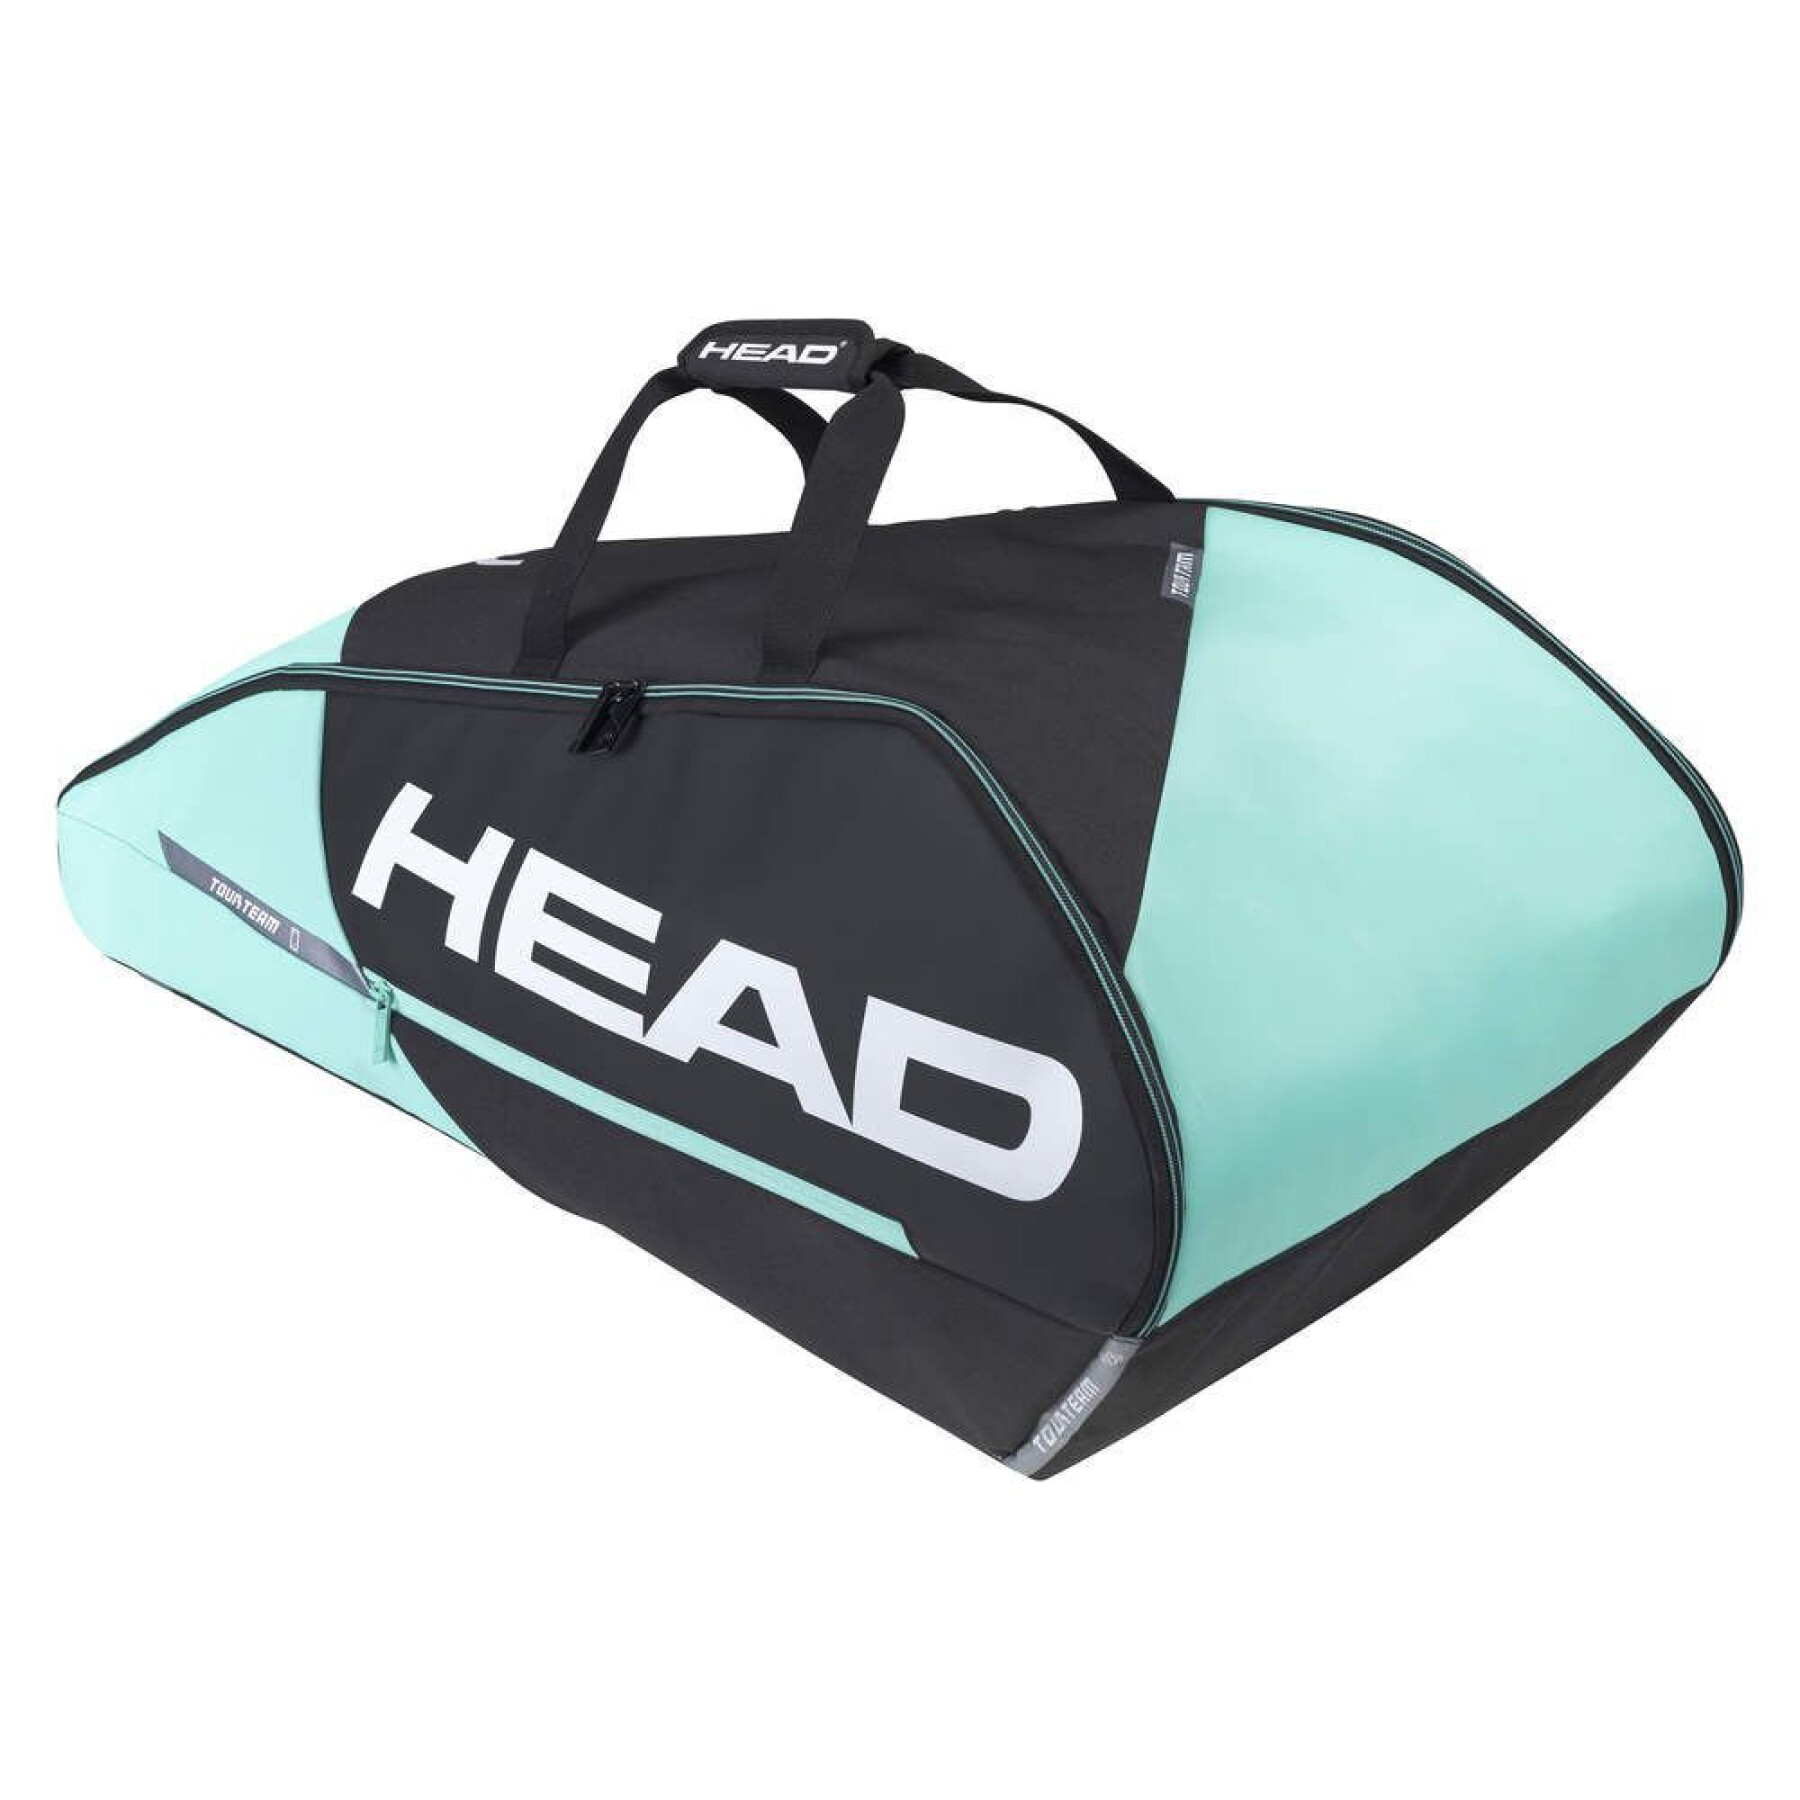 Tasche für Tennisschläger Head Tour Team 9R